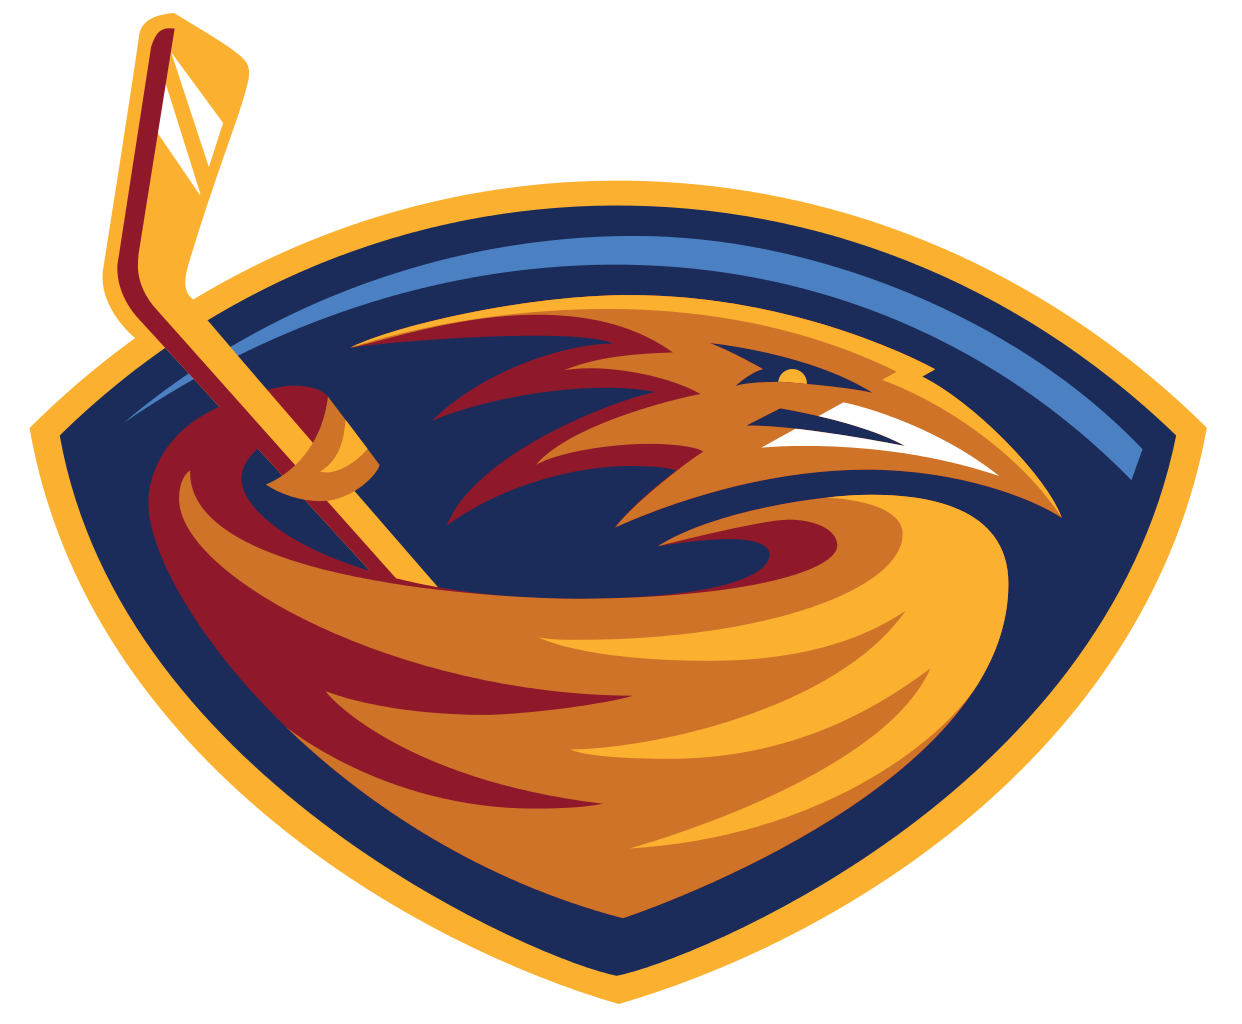 Atlanta Trashers Logo - Property of the National Hockey League